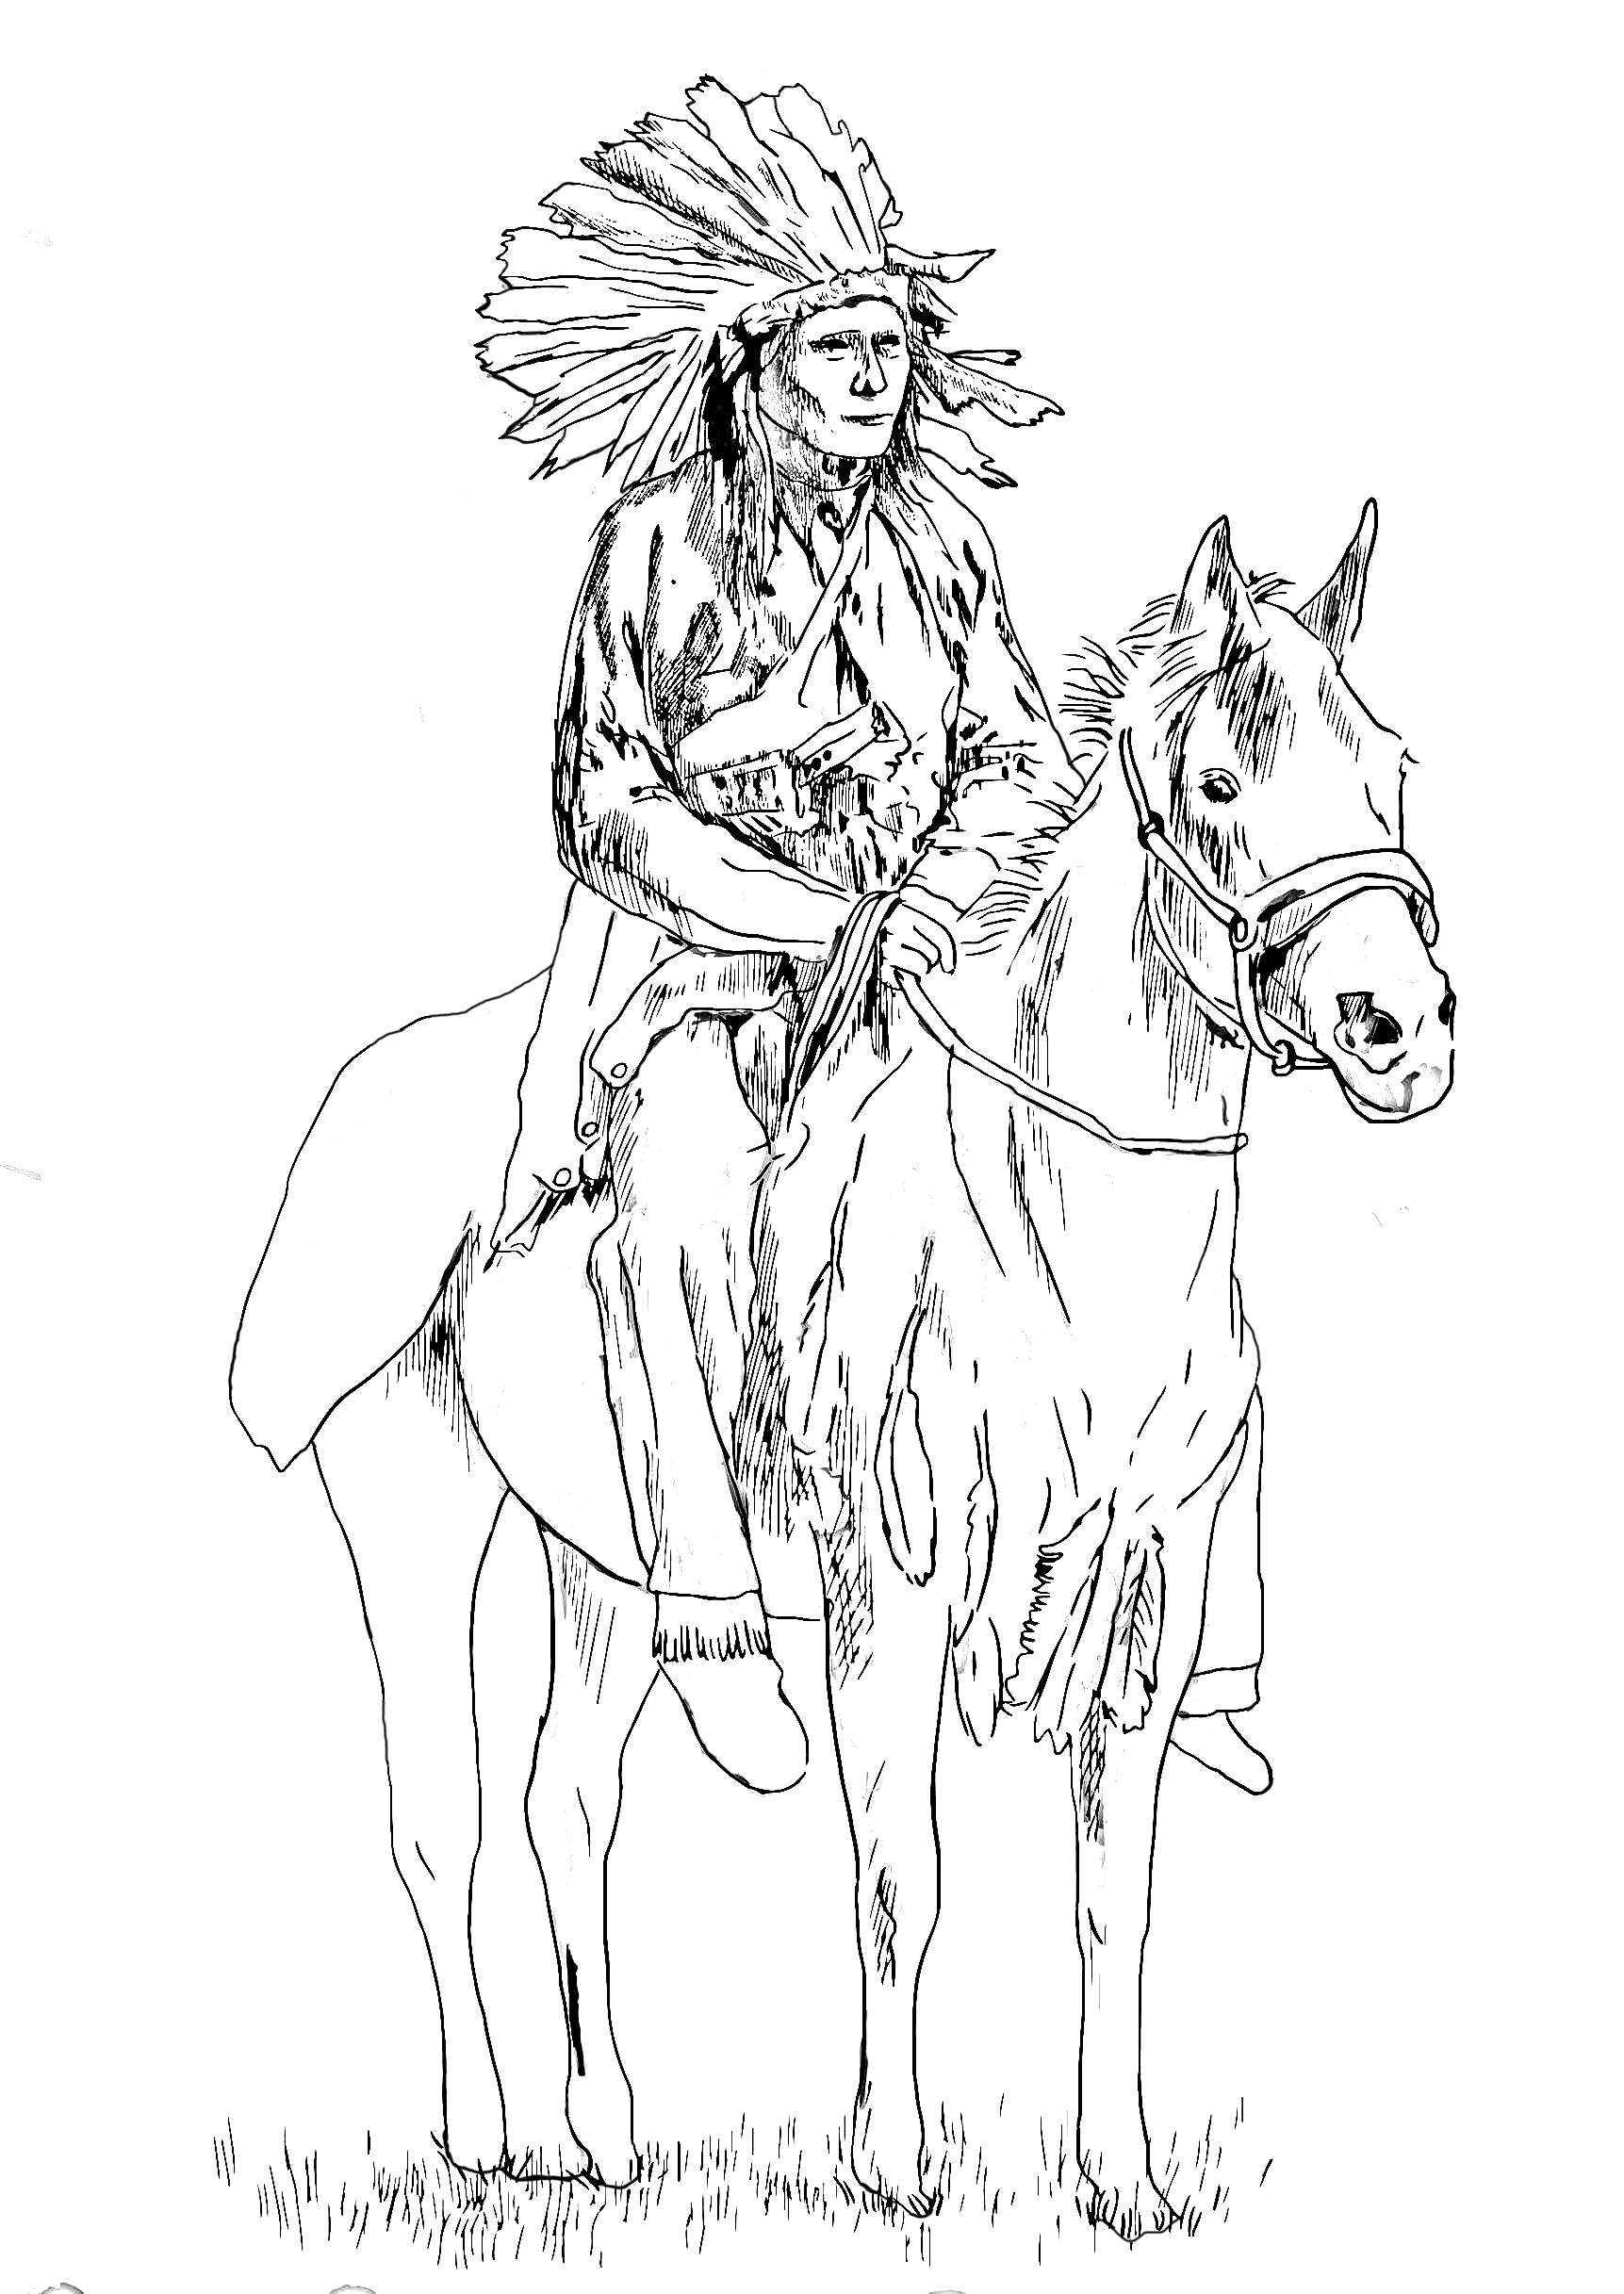 Desenhos incríveis grátis para colorir de Nativos americanos para baixar, Artista : Kuco   Fonte : 123rf